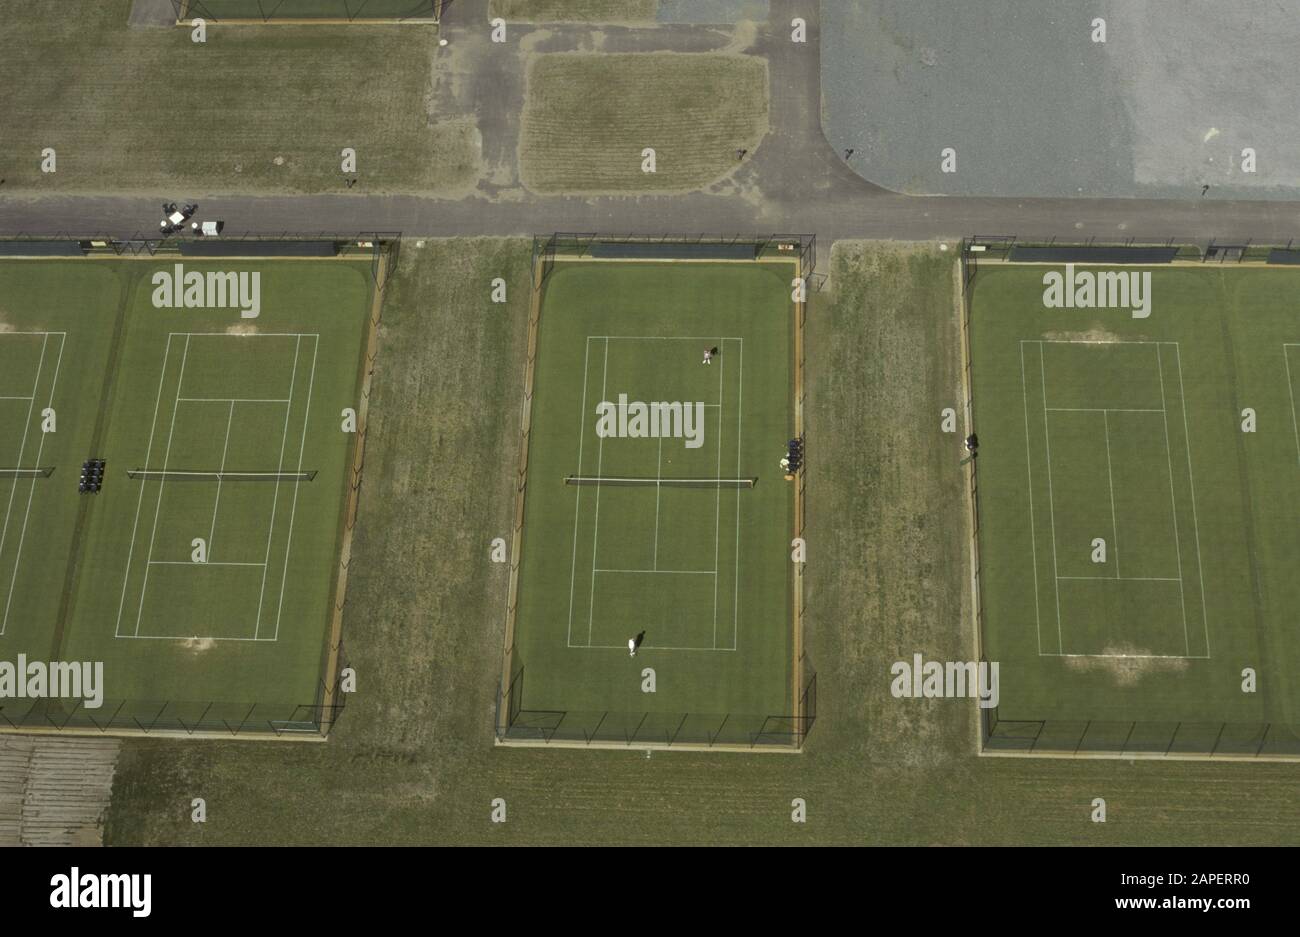 Tennisplätze, Luftbild - Tennis, Luftbild Stockfoto